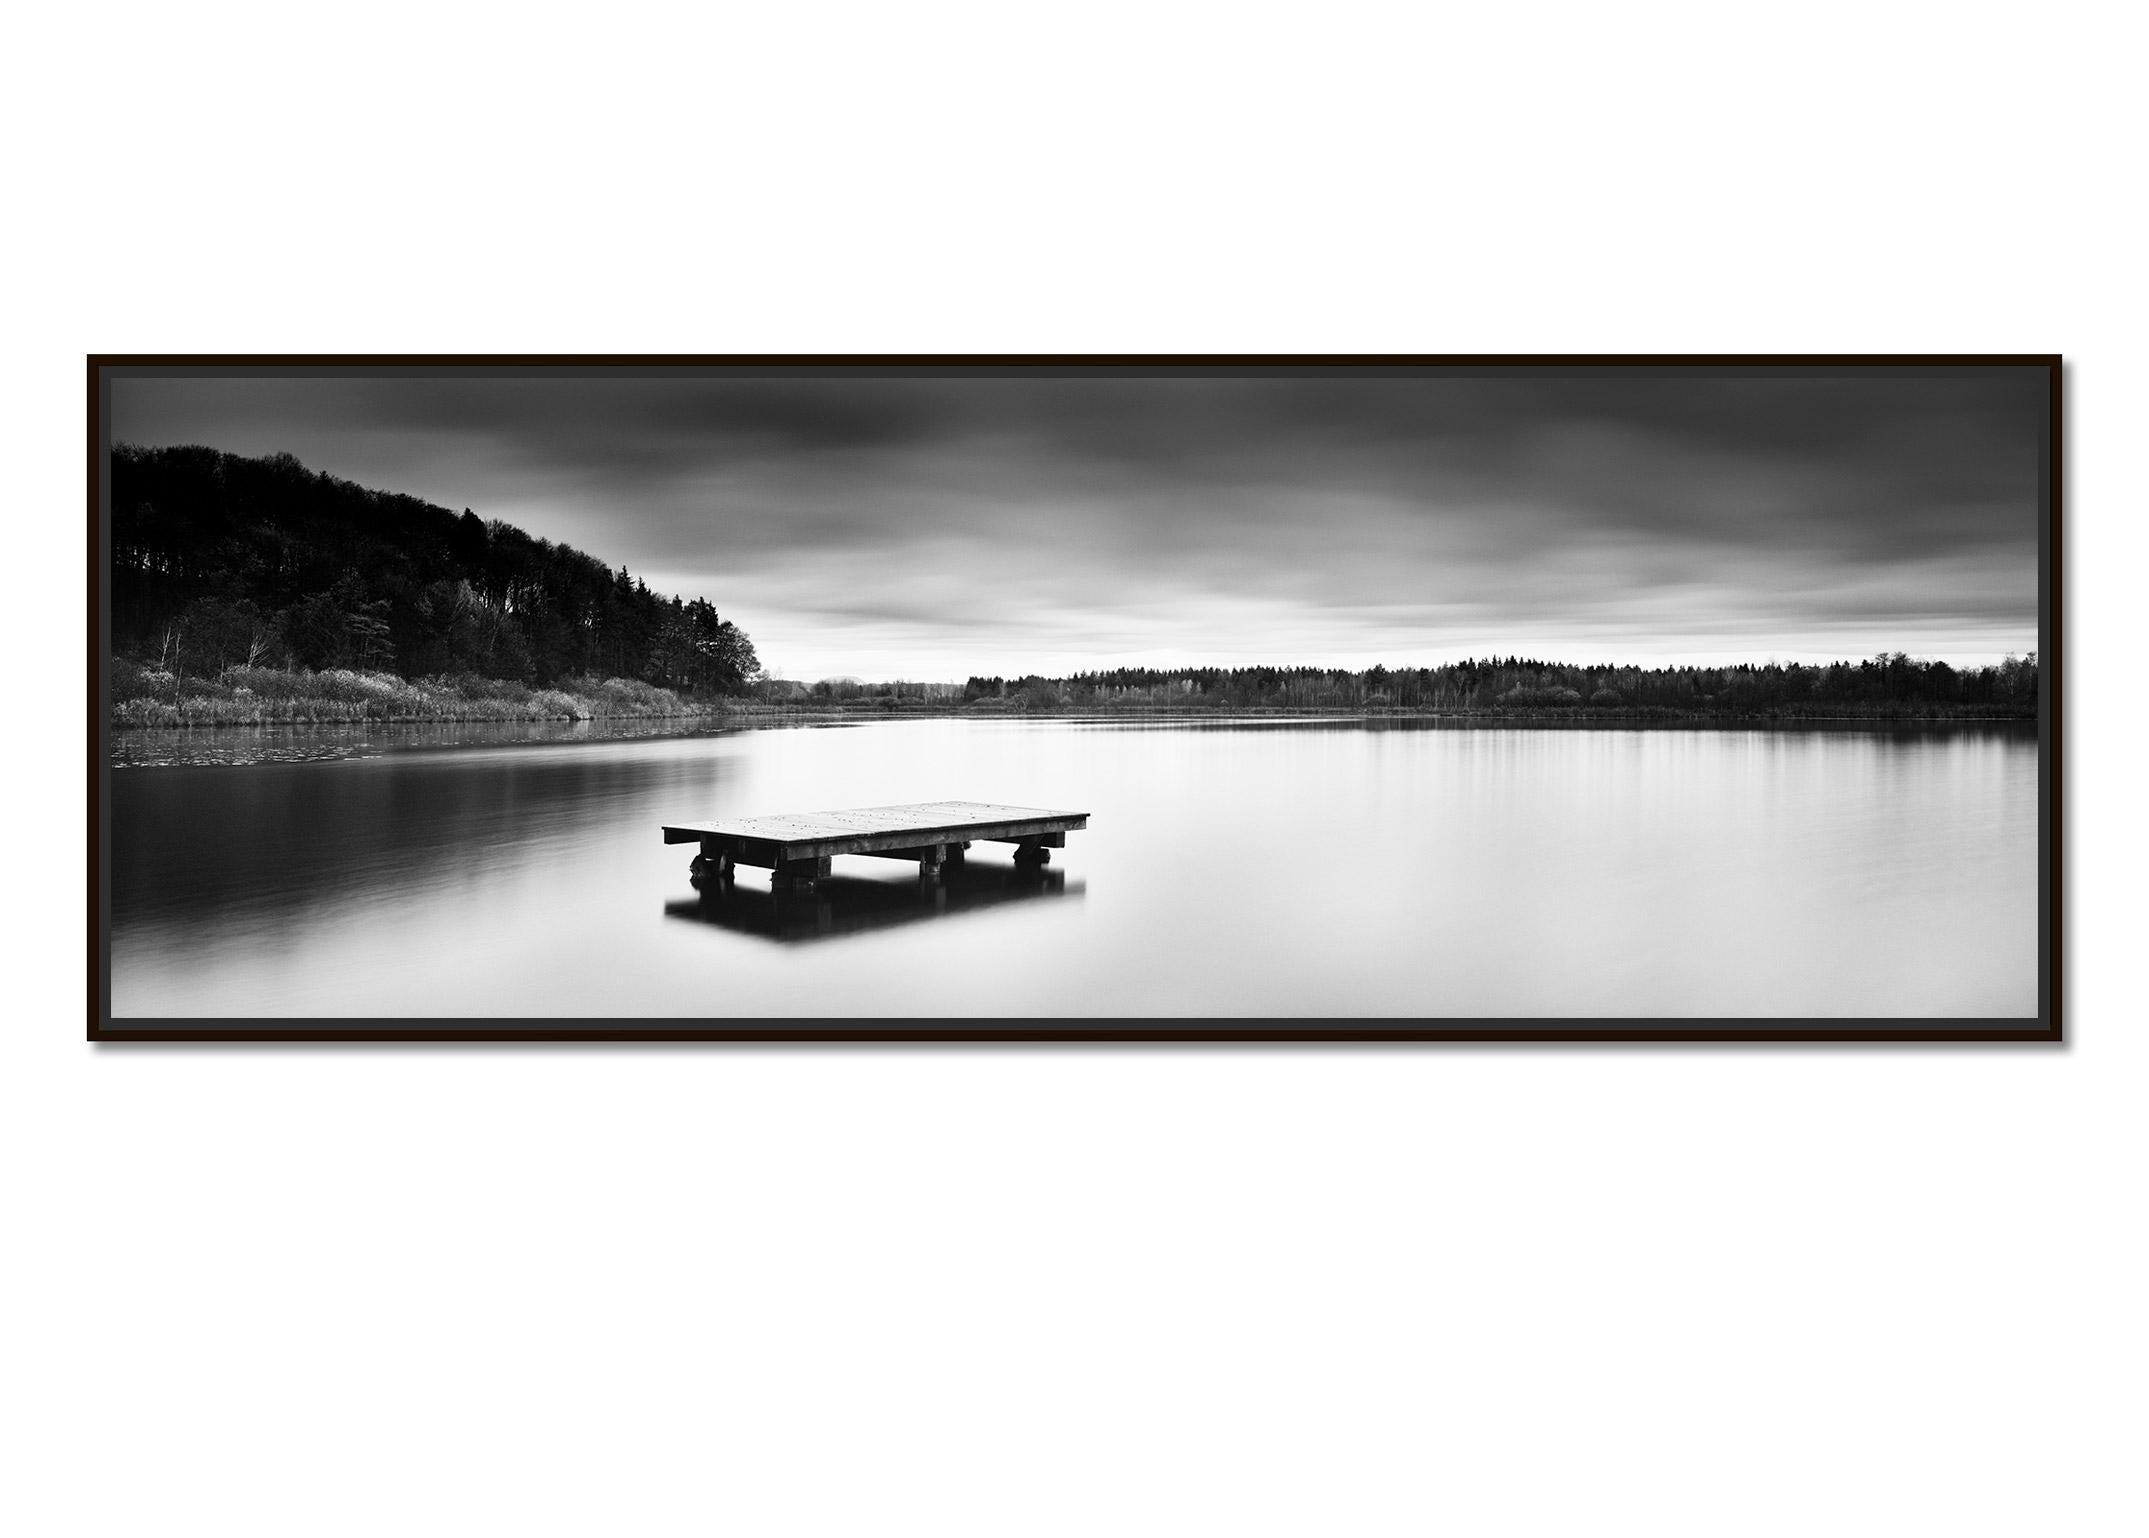 Vue du lac, panorama, longue exposition de photographies de paysages en noir et blanc - Photograph de Gerald Berghammer